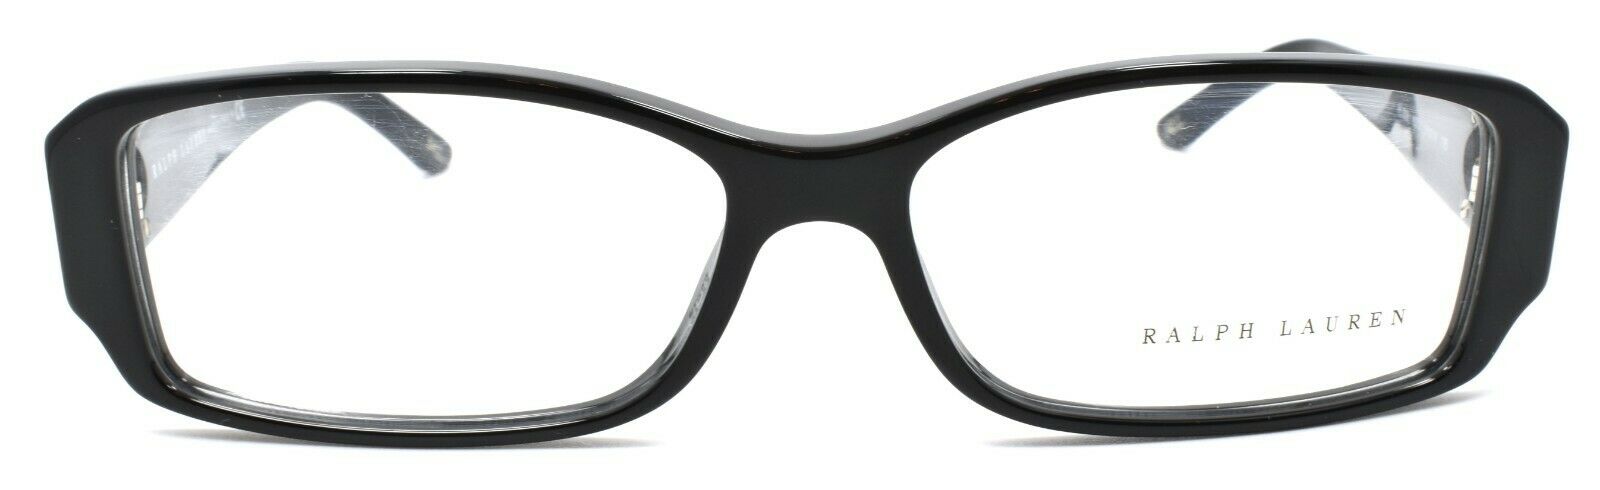 2-Ralph Lauren RL6051 5001 Women's Eyeglasses Frames 55-16-135 Black ITALY-713132311110-IKSpecs